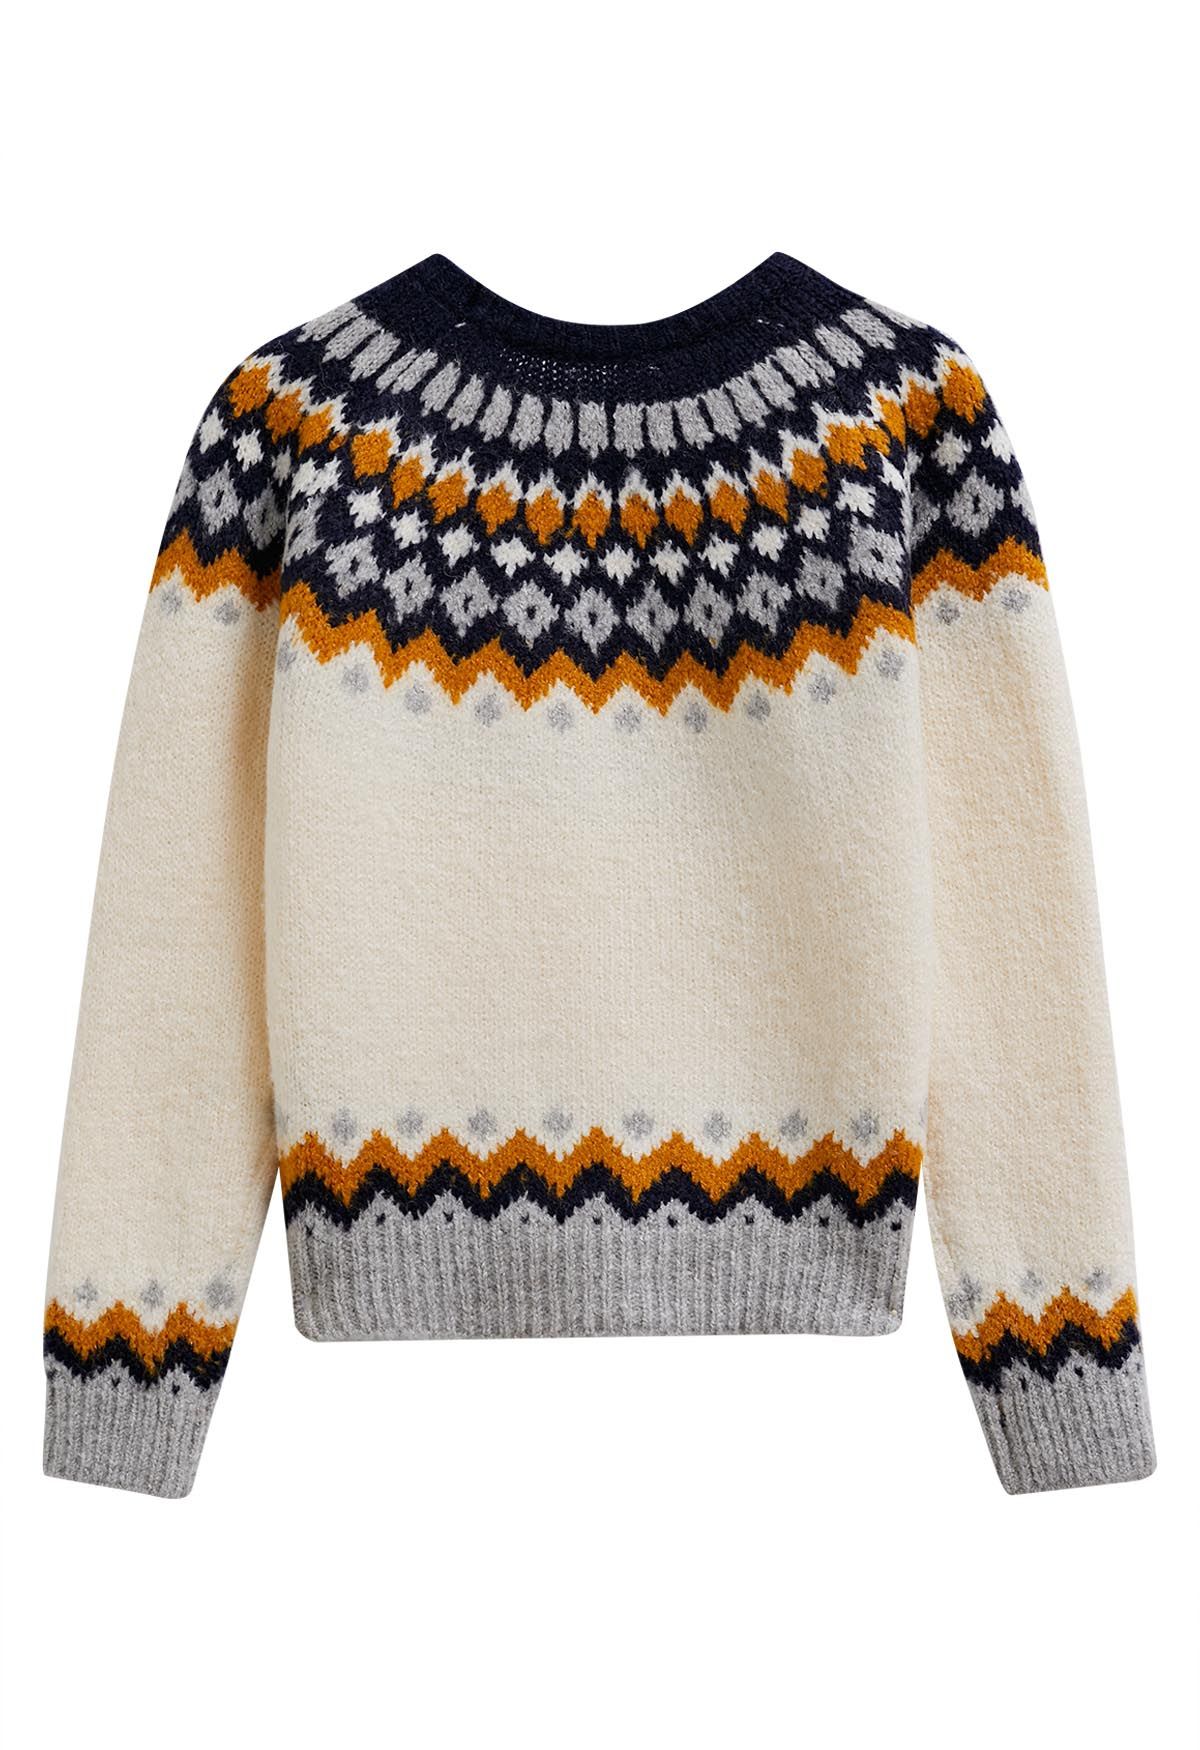 Suéter de punto con estampado estilo Fair Isle en color crema